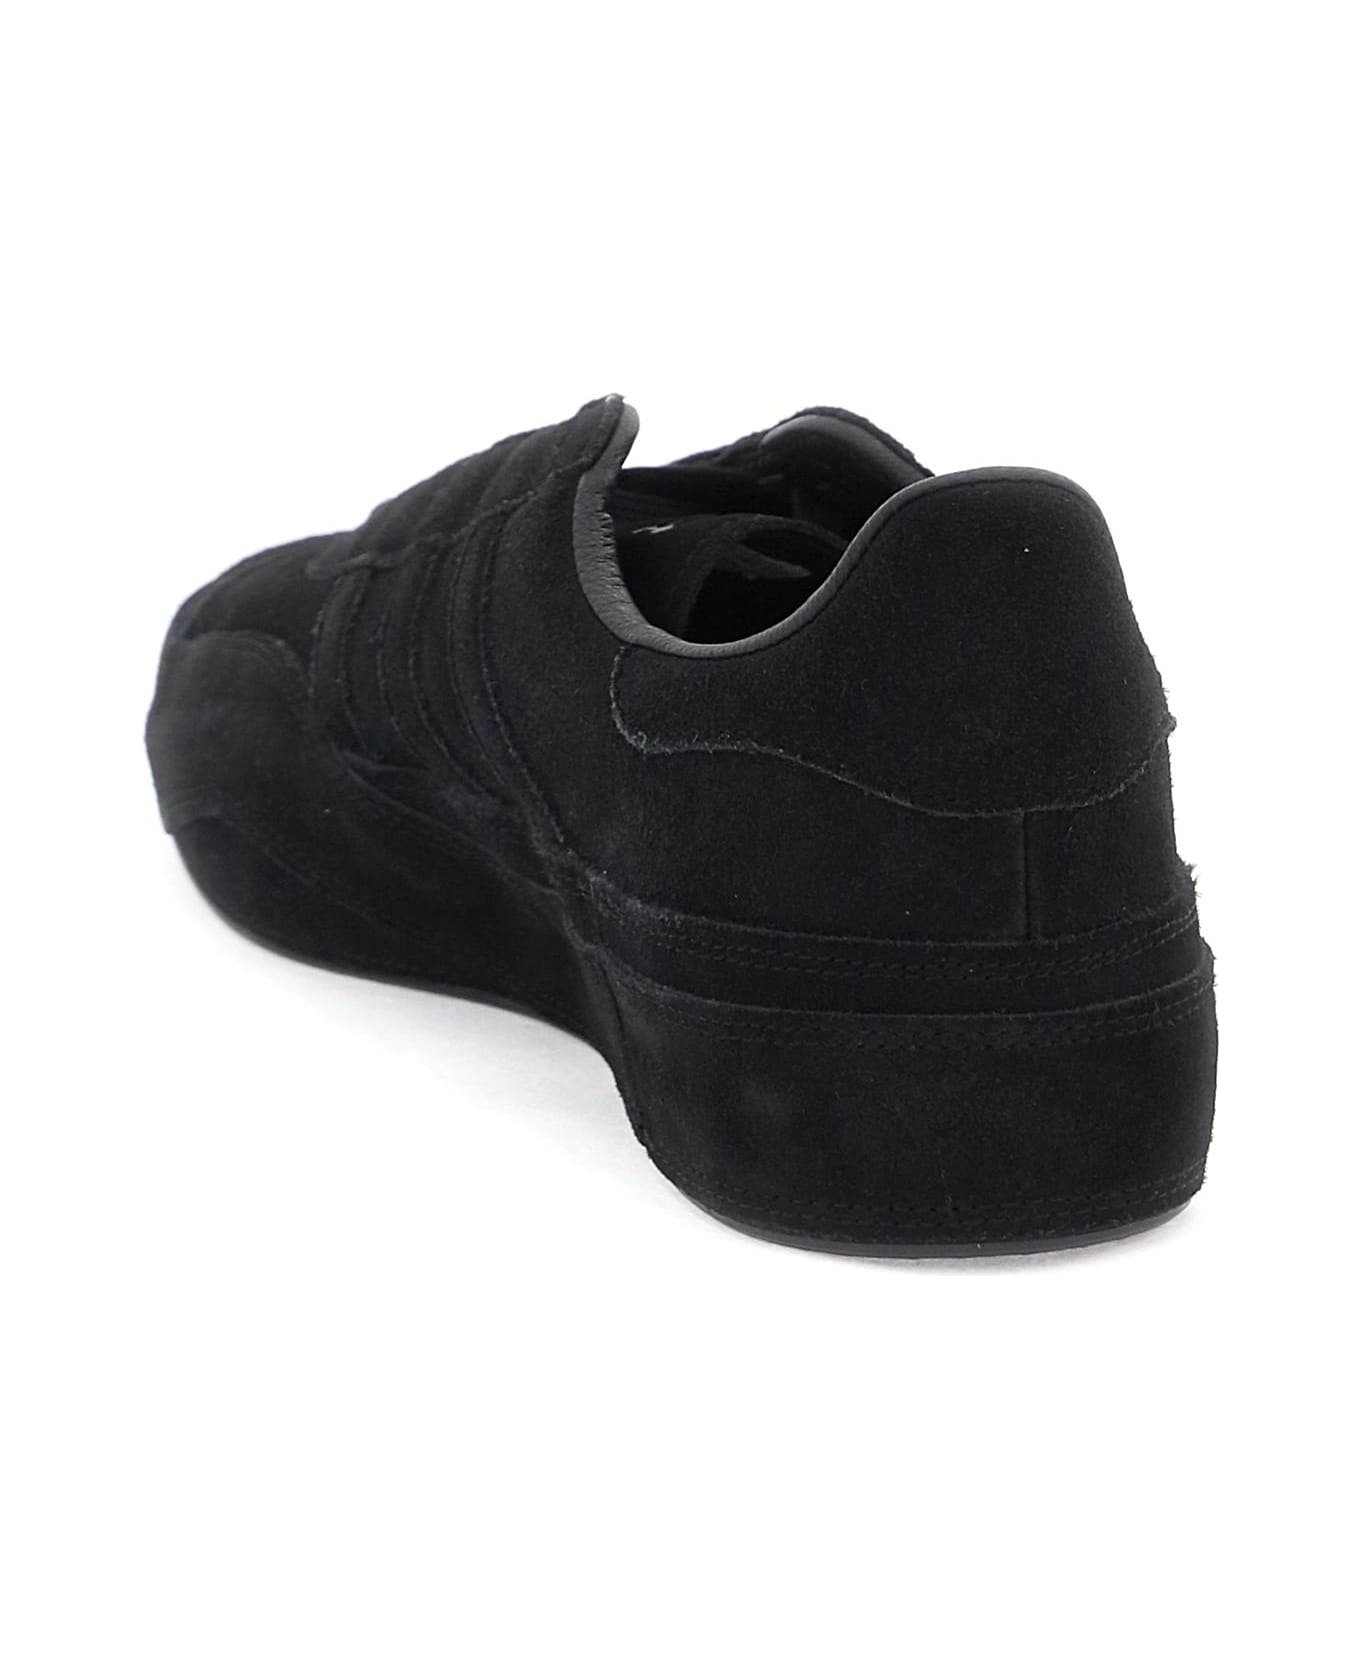 Y-3 Gazzelle Sneakers - BLACK BLACK BLACK (Black) スニーカー